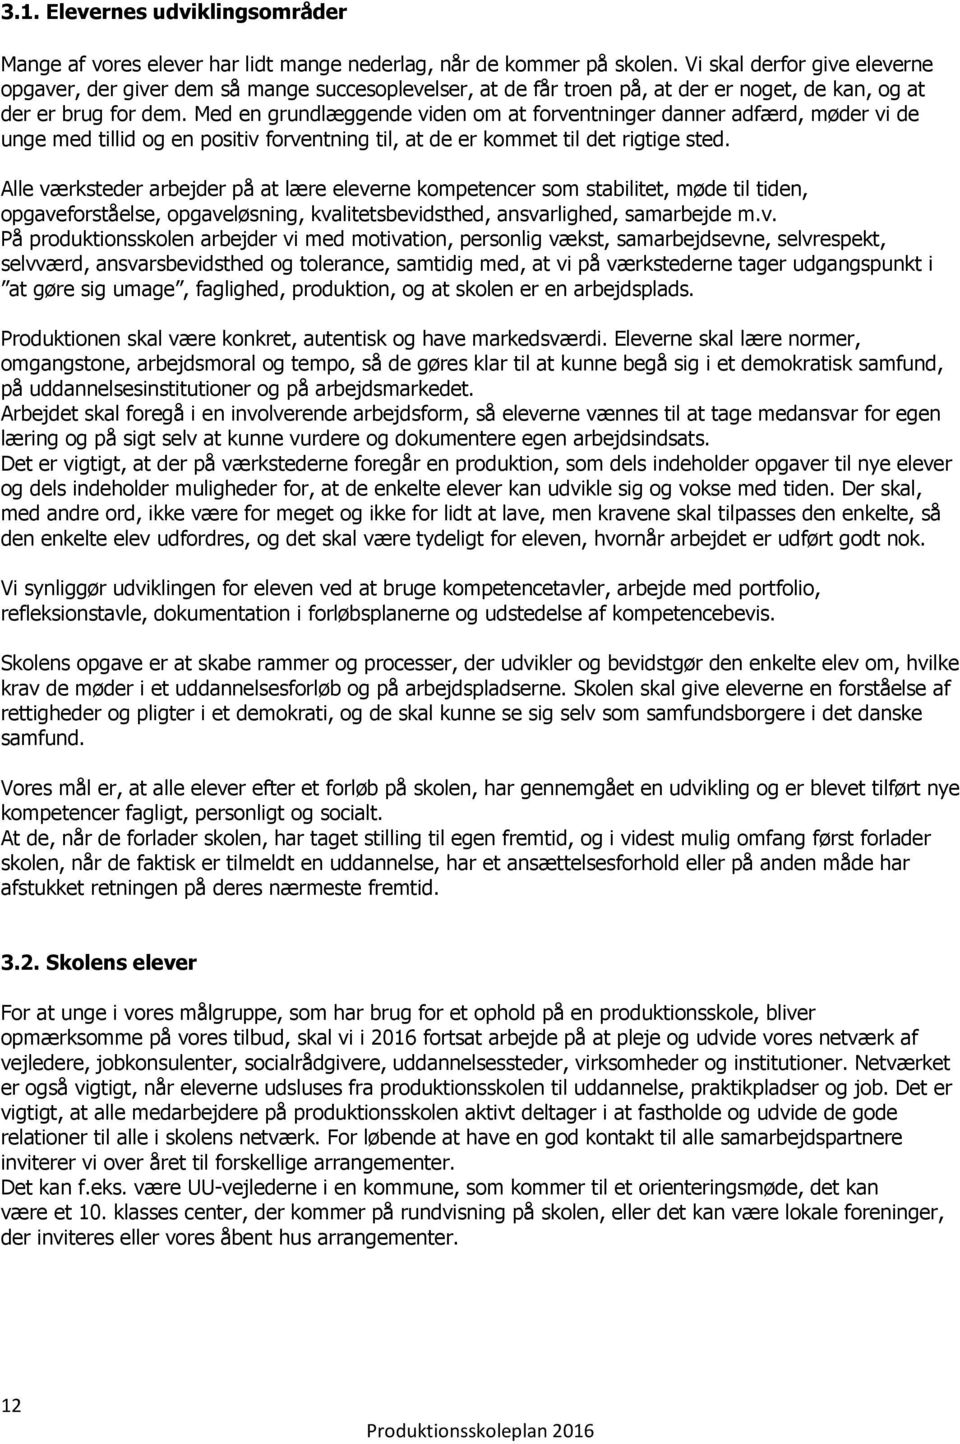 Skanderborg Hørning Produktionsskole. Produktionsskoleplan - PDF Gratis  download